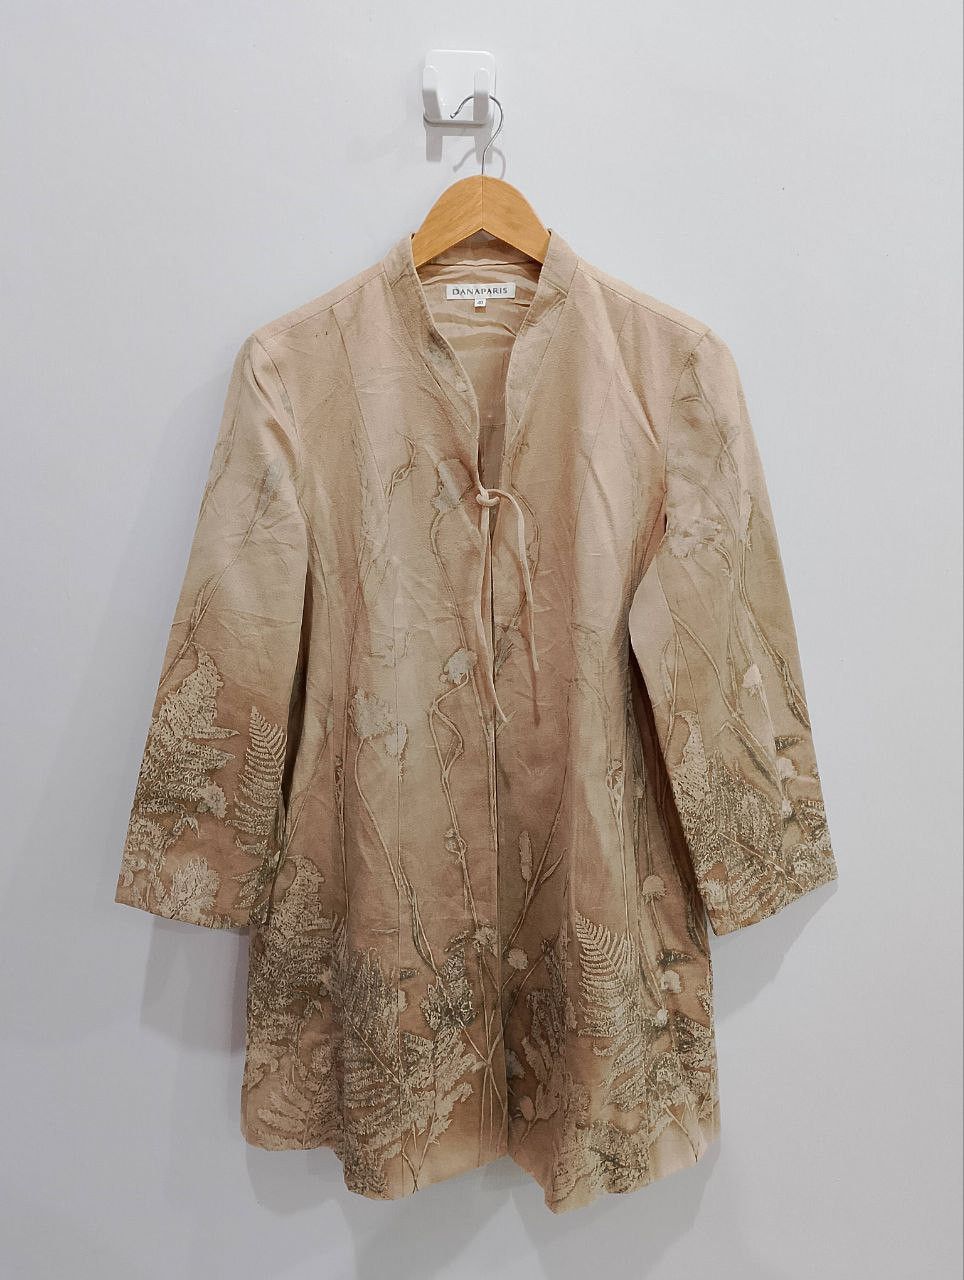 Vintage DANA PARIS Floral Jacquard Style Dress Coat Jacket - 2